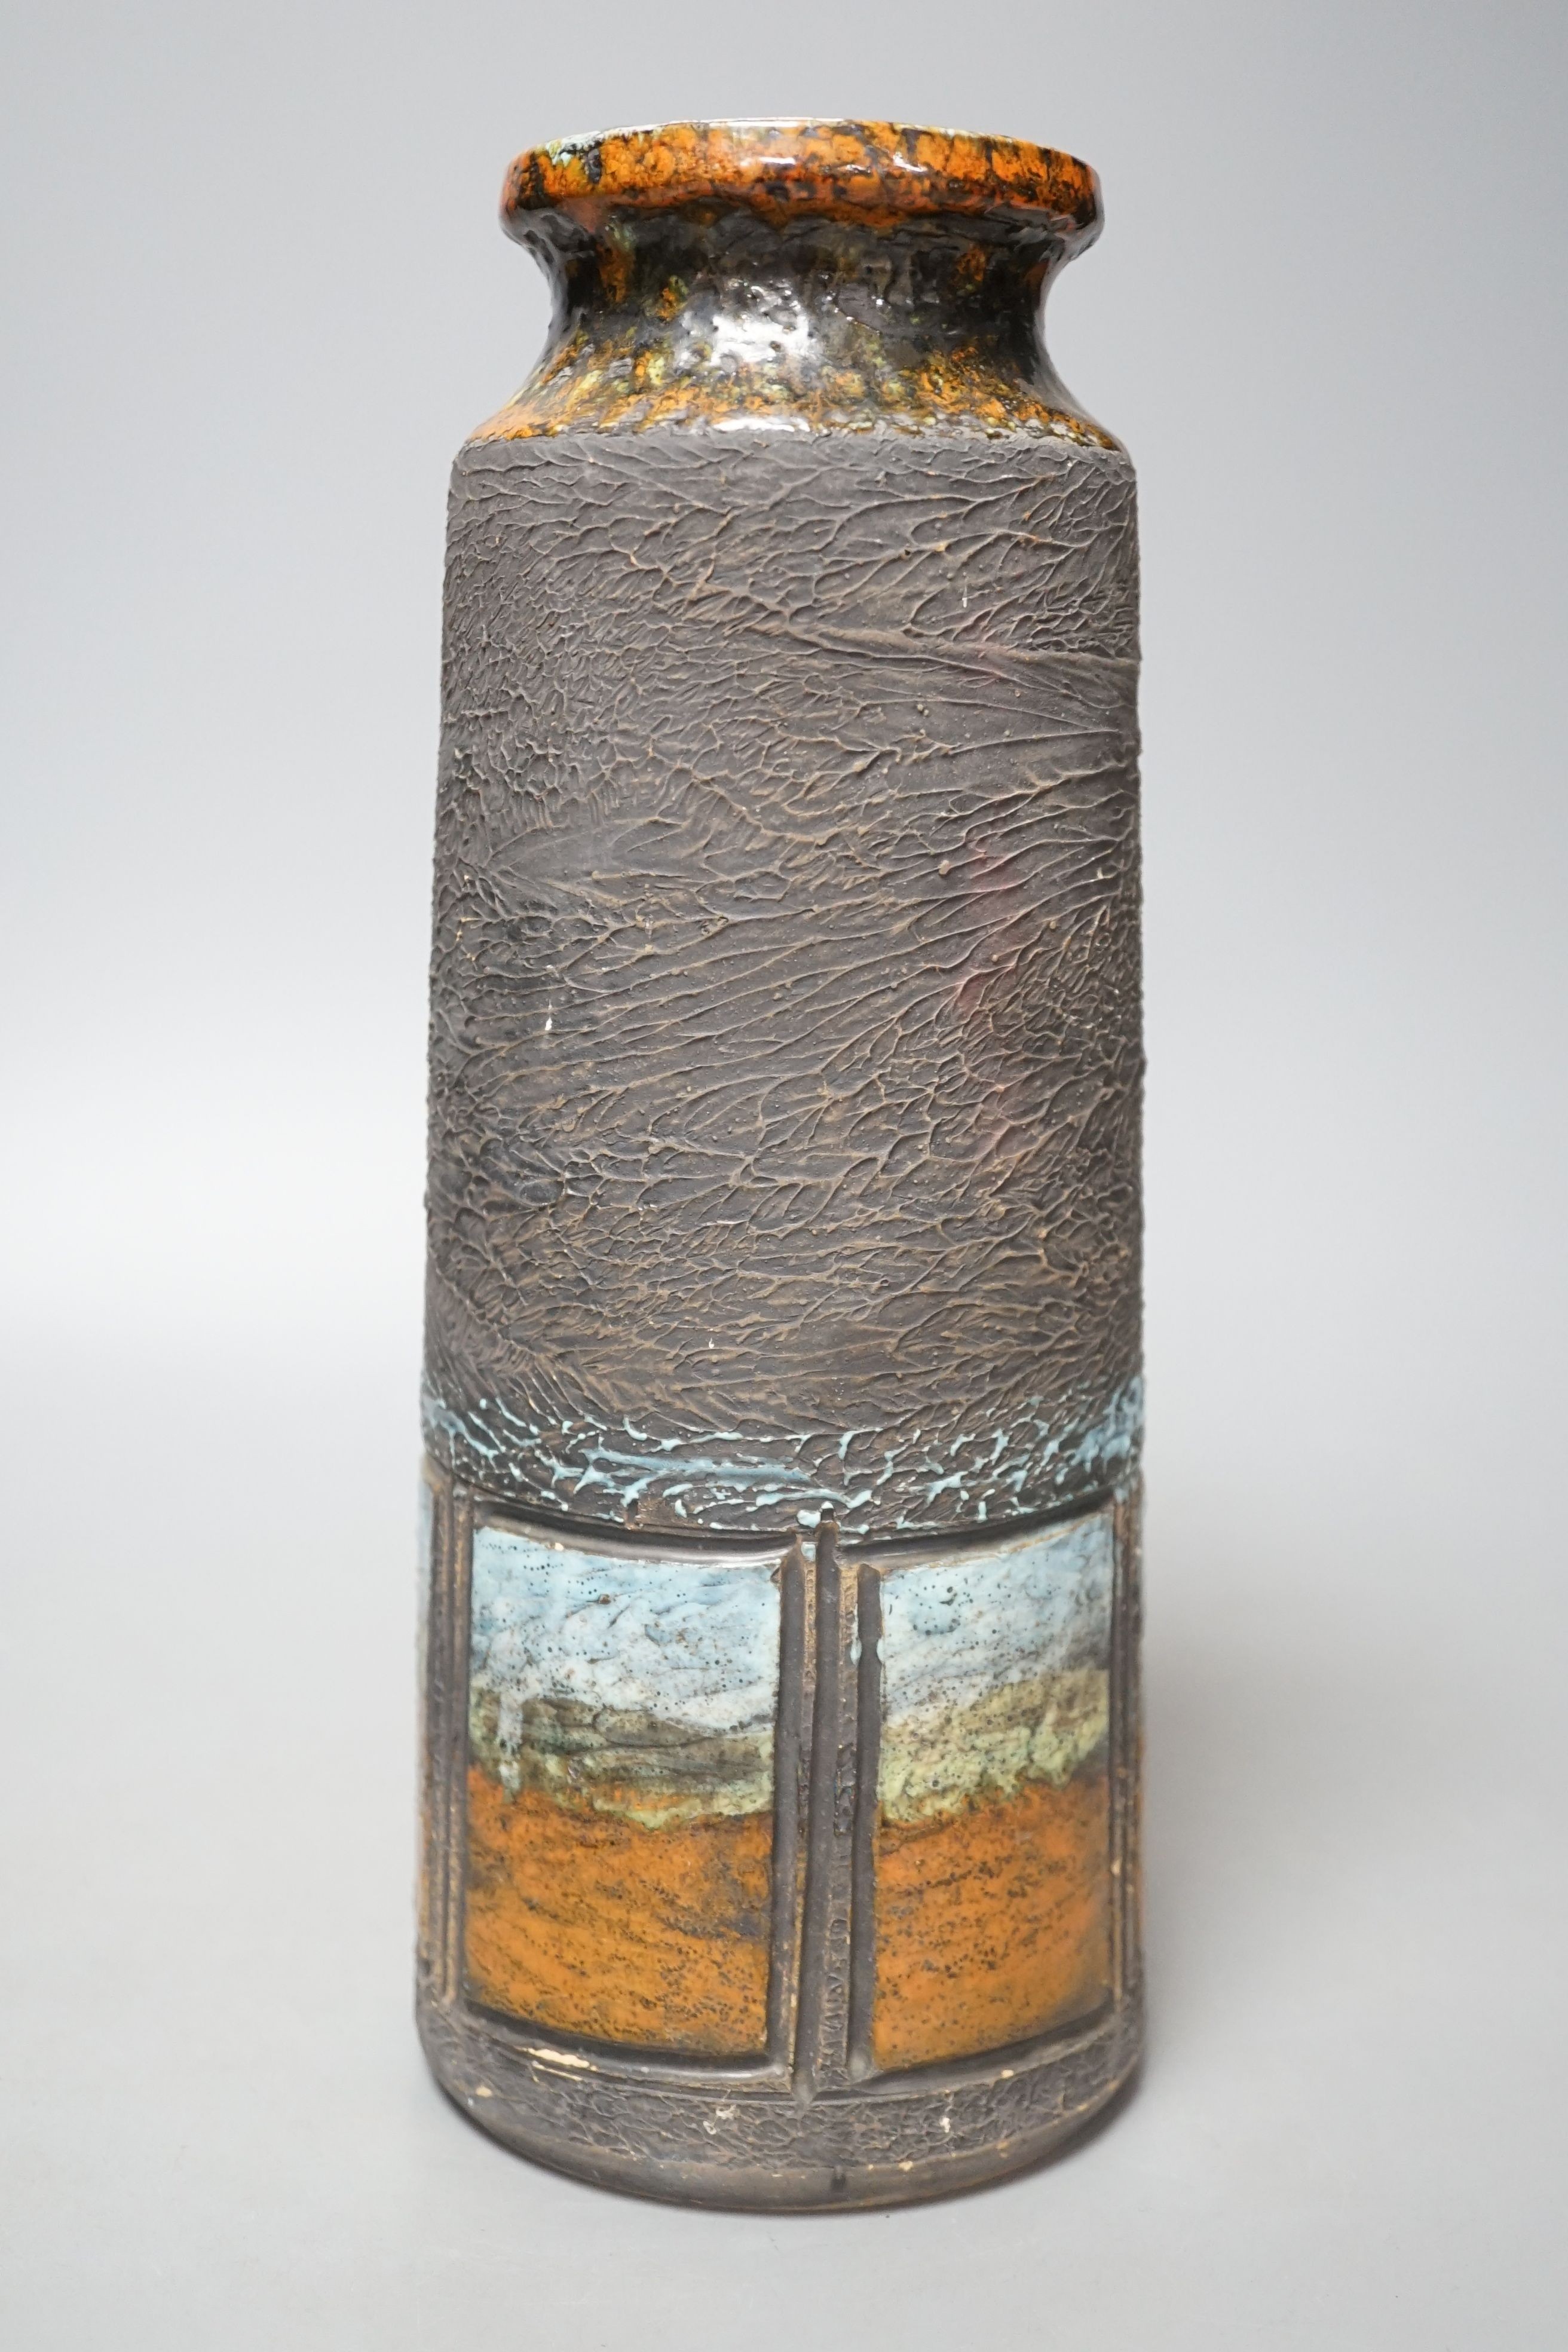 A Tilgman Keramik Irish pottery vase - 28.5cm tall